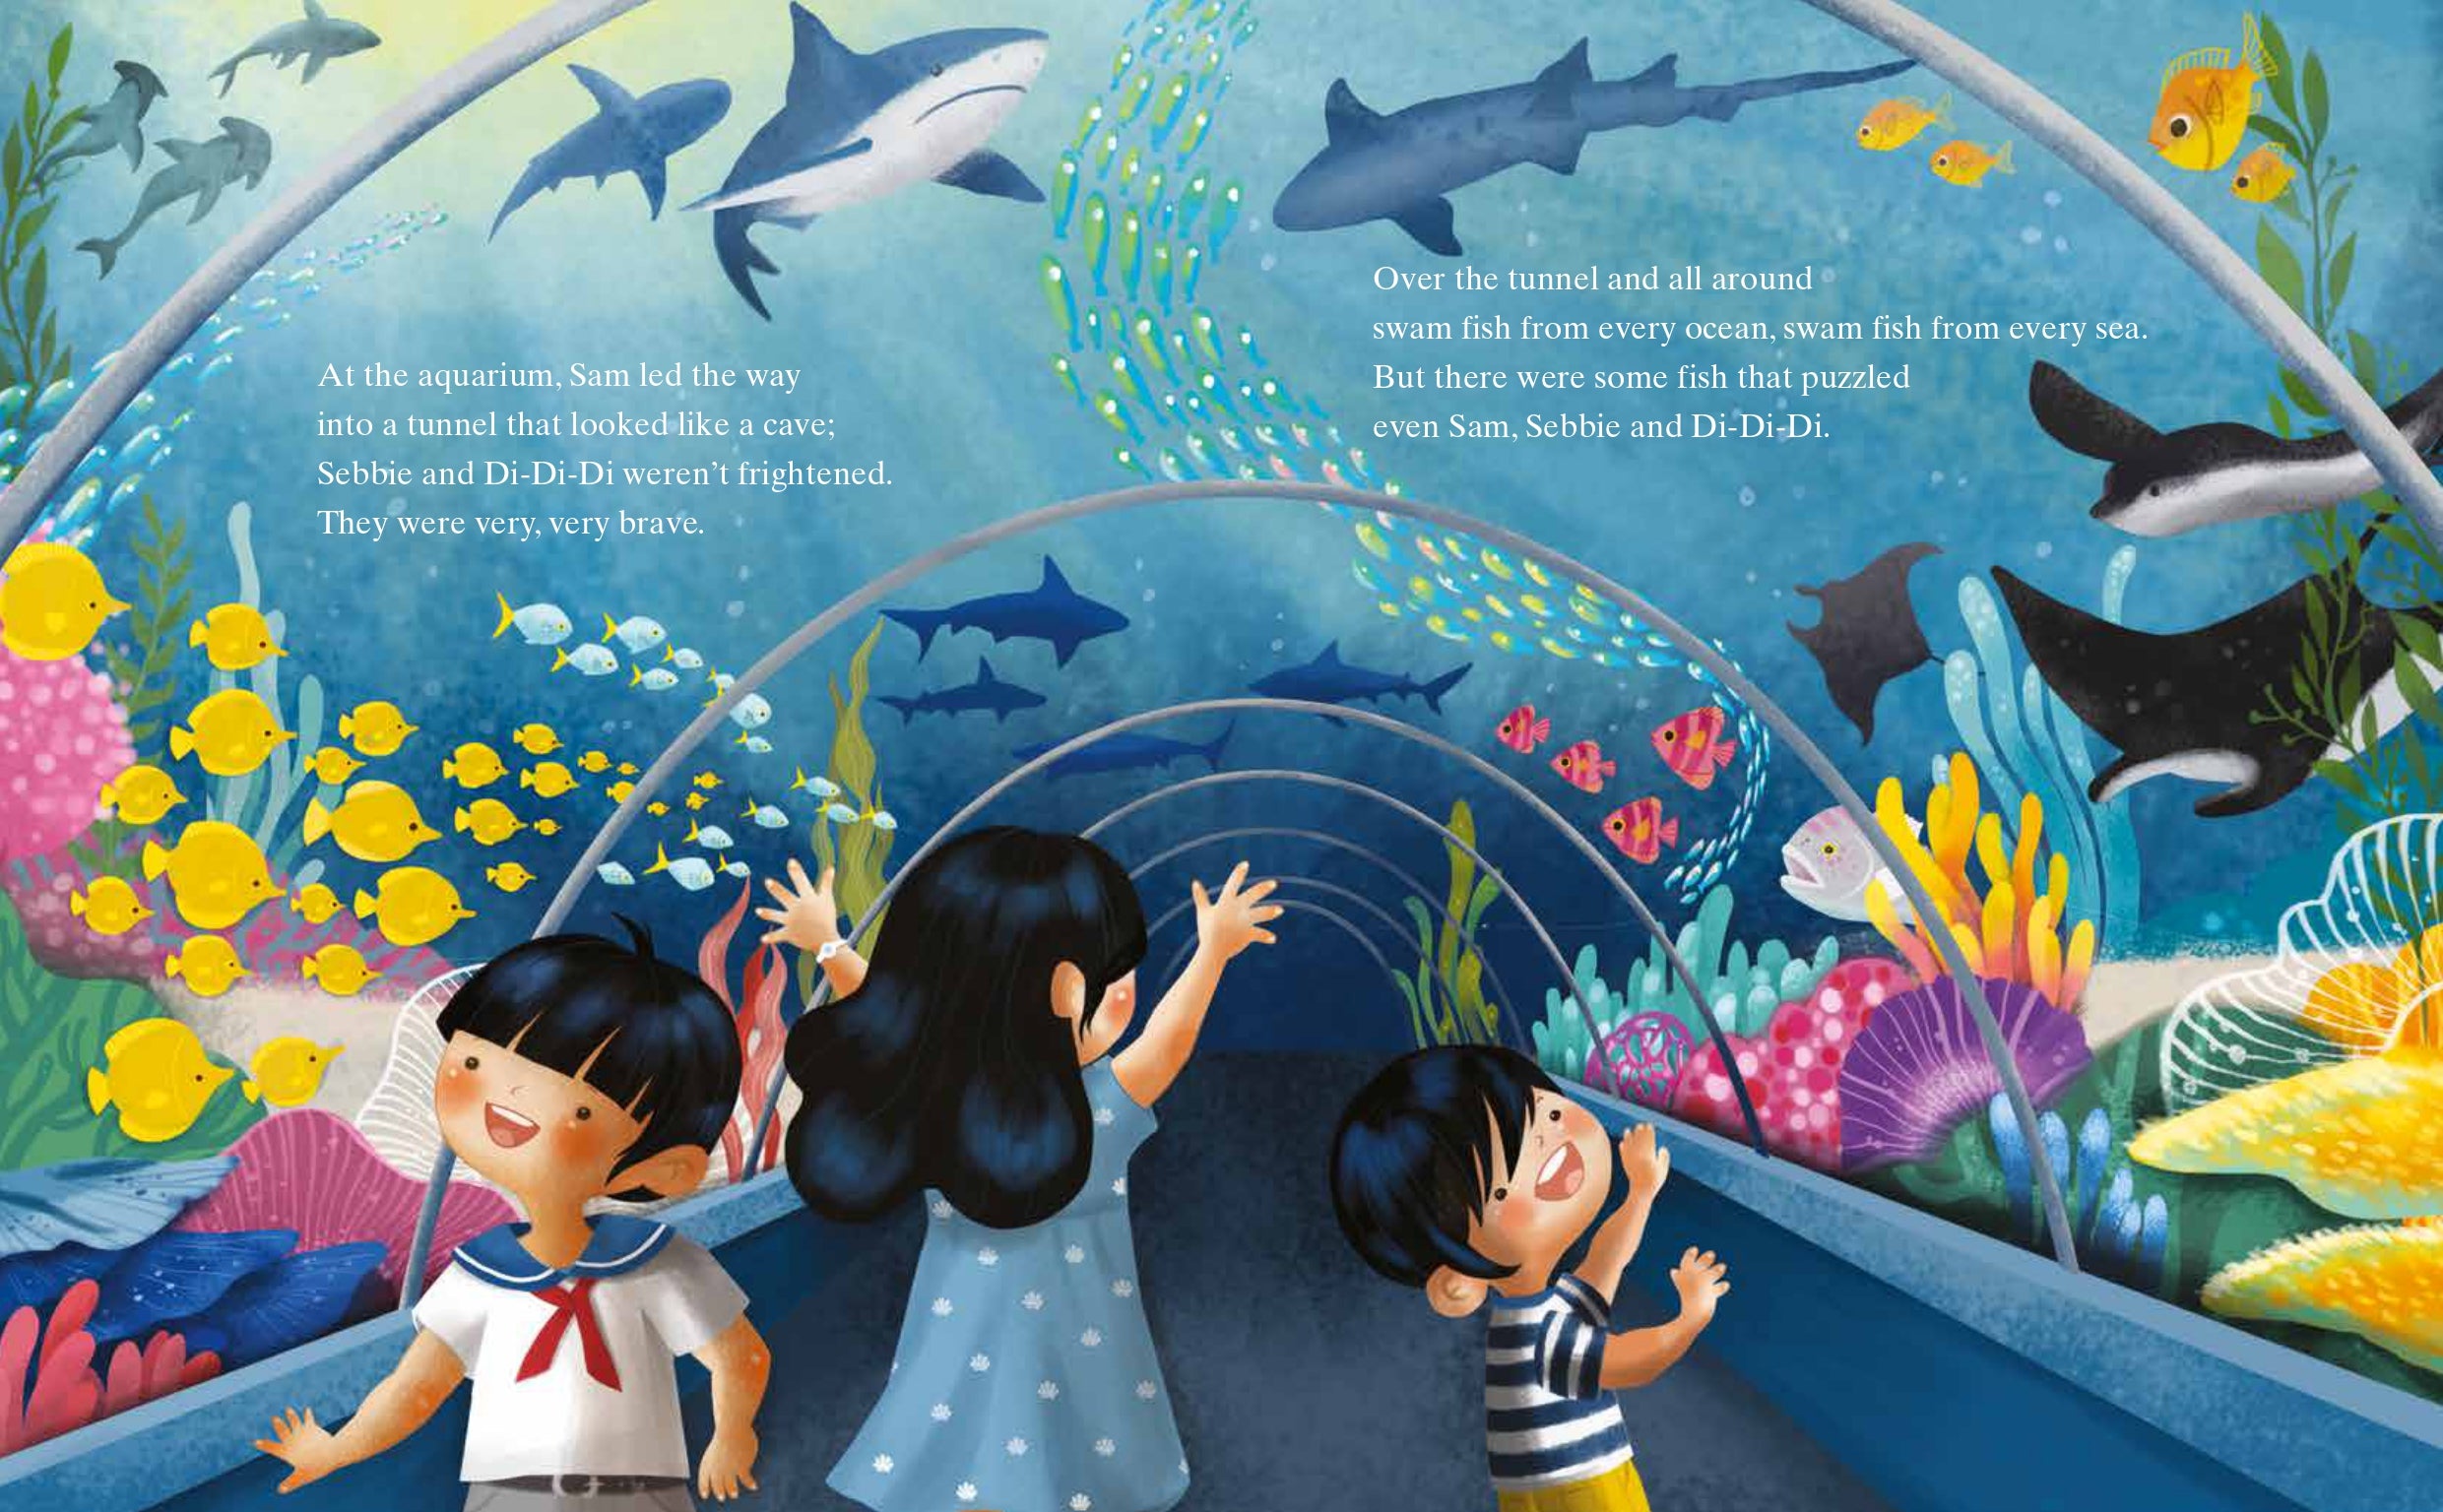 Sam, Sebbie and Di-Di-Di: At the S.E.A. Aquarium (book 2)